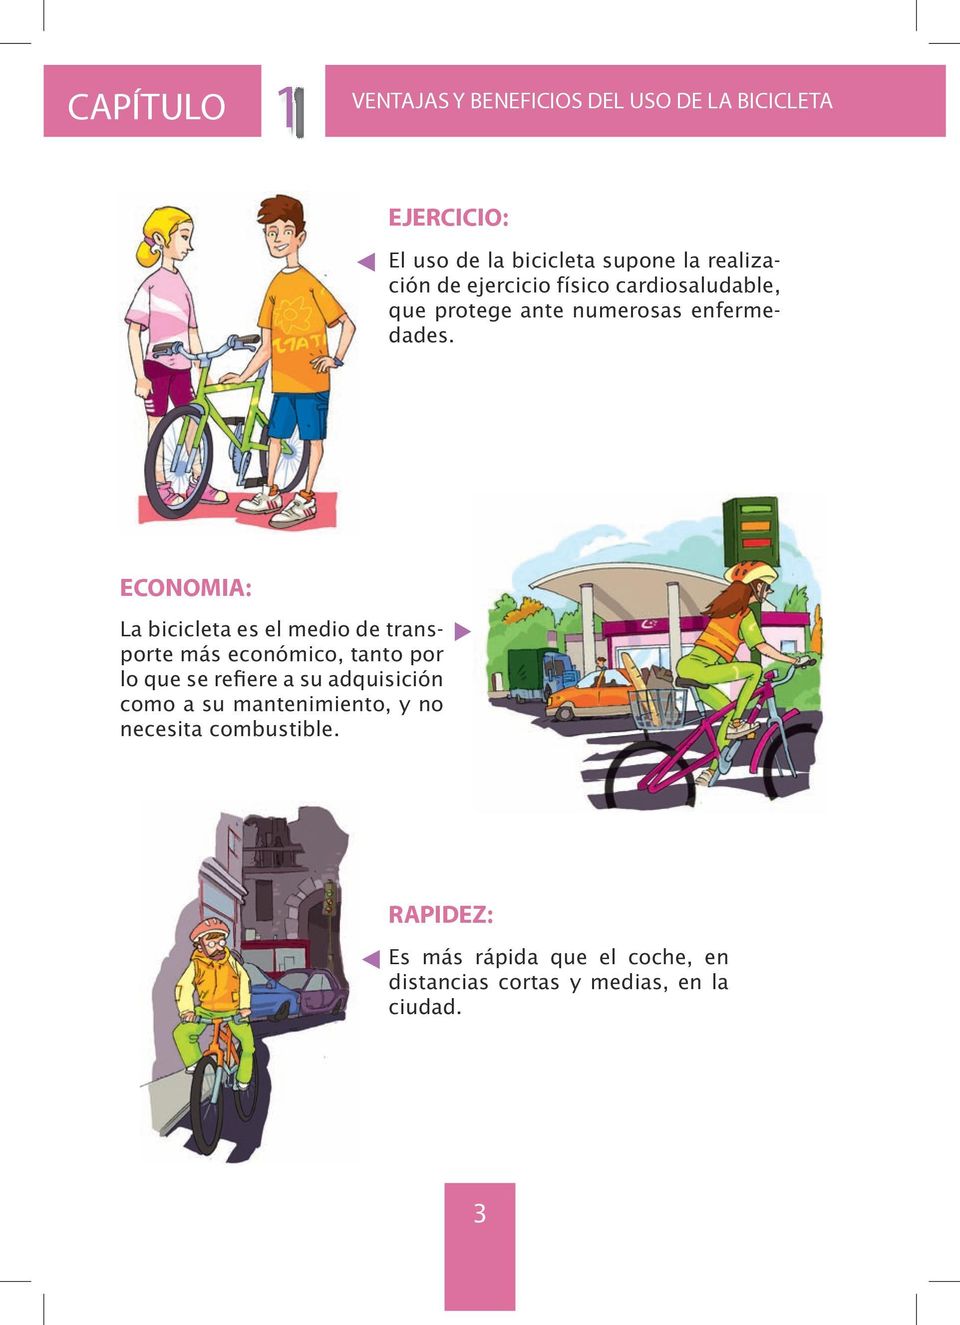 ECONOMIA: La bicicleta es el medio de transporte más económico, tanto por lo que se refiere a su adquisición